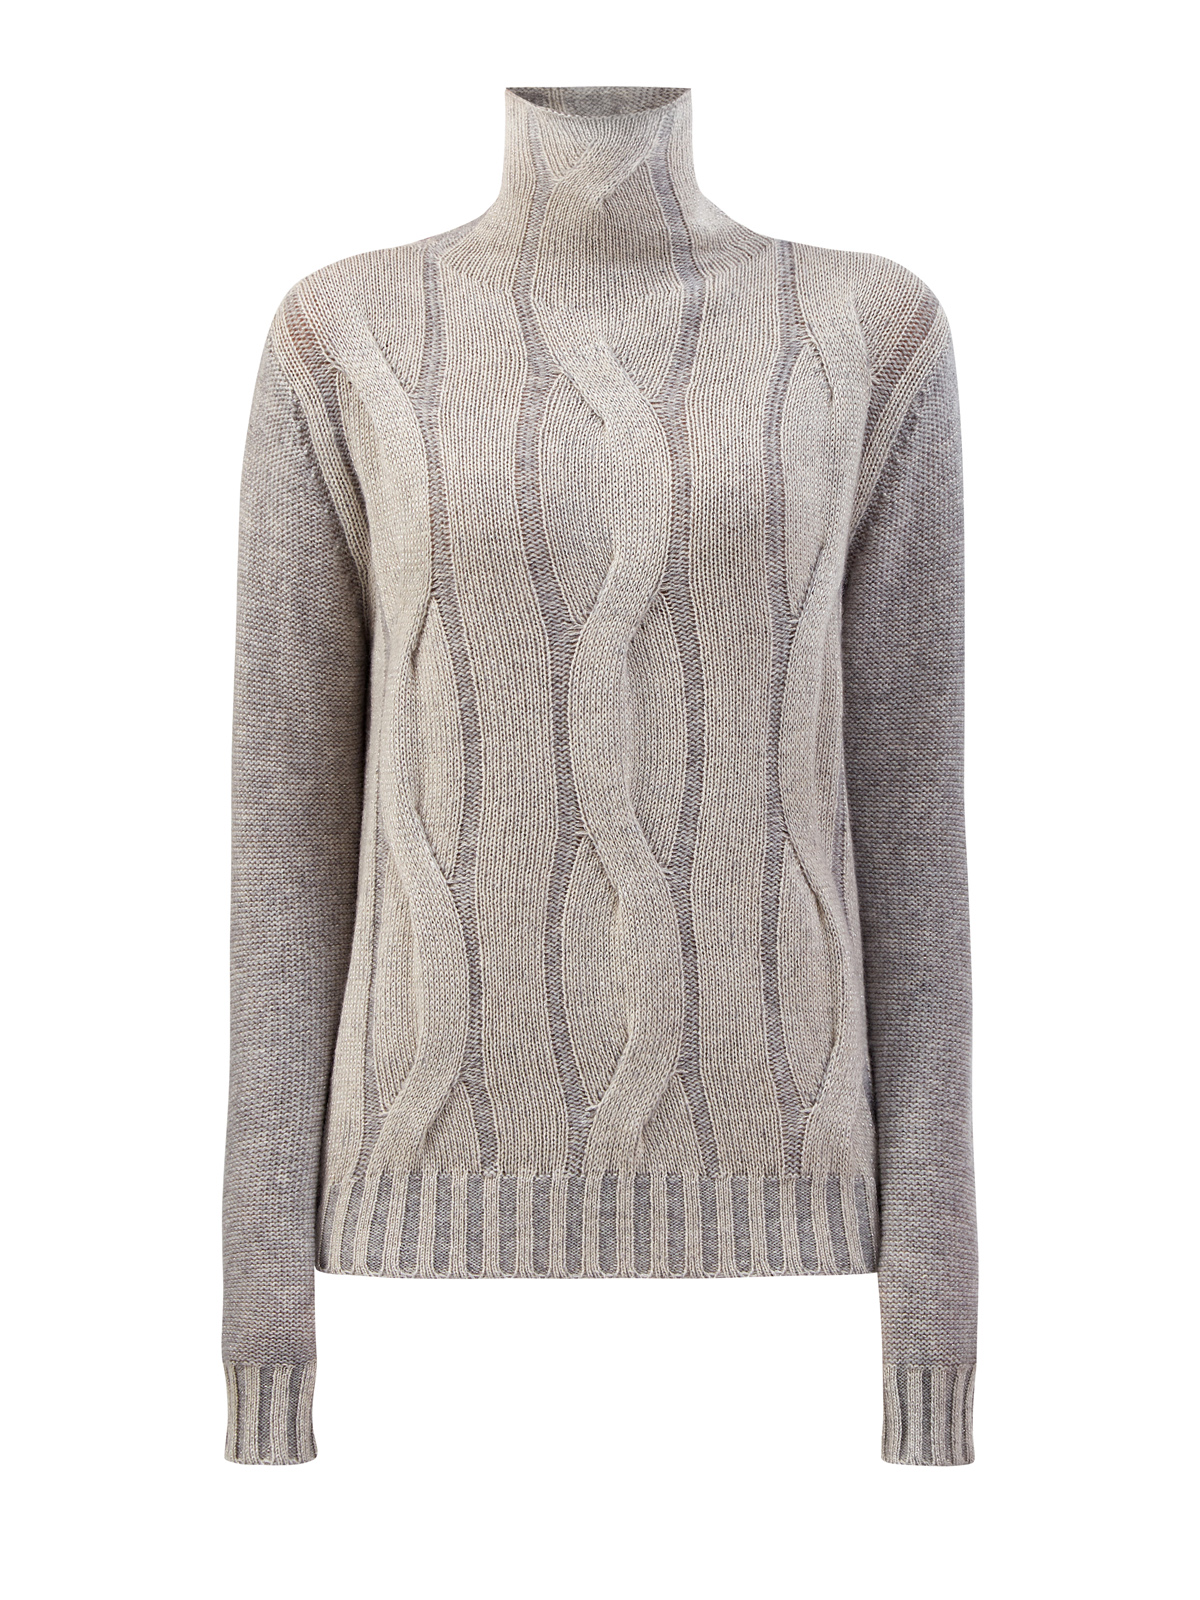 Тонкий свитер из кашемира узорной вязки с пайетками LORENA ANTONIAZZI, цвет серый, размер 40;42;44